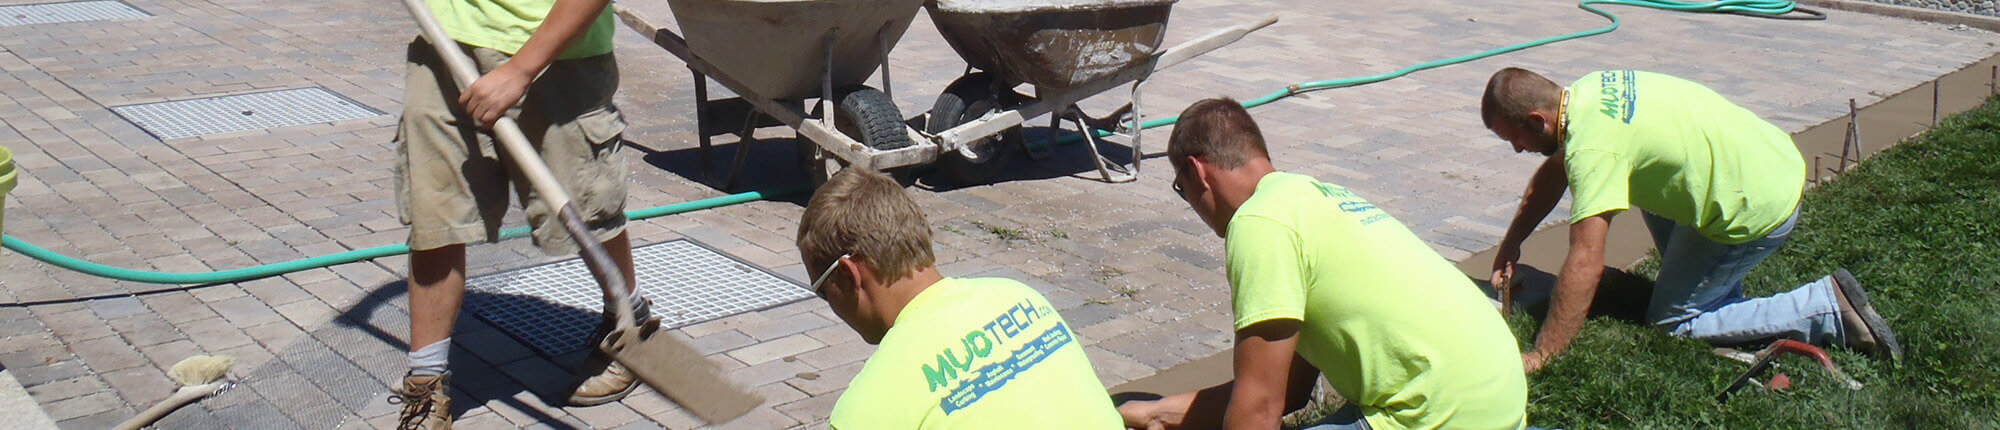 MUDTeCH technicians at work on a pavement repair job.